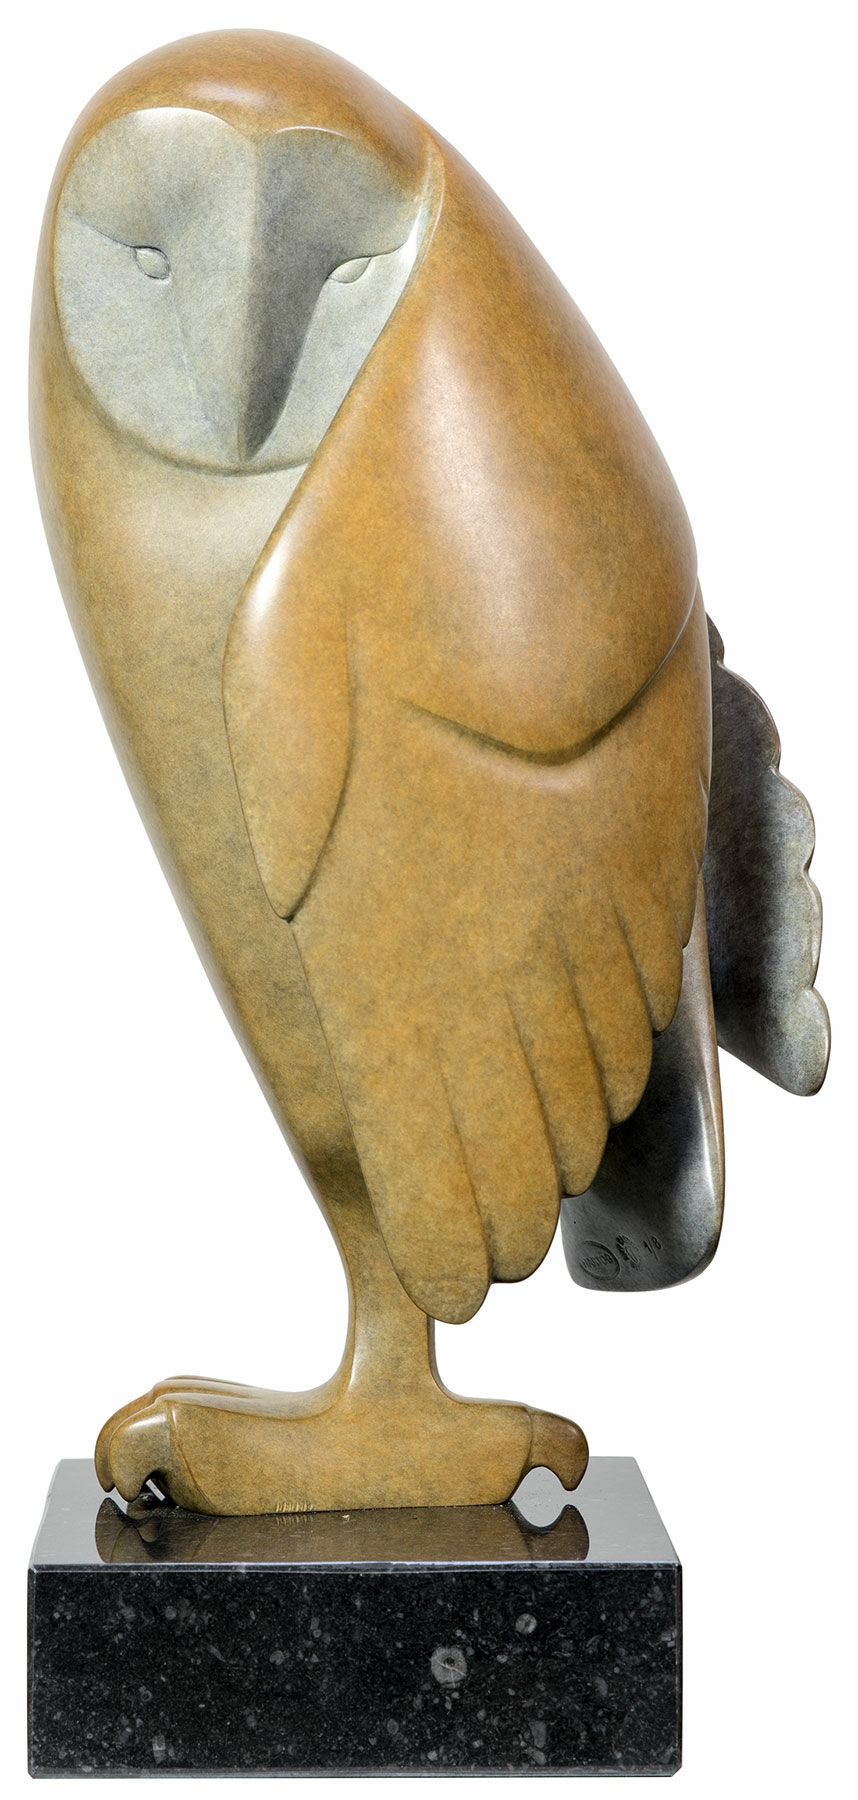 Skulptur "Upward Looking Owl No. 2", bronze brun von Evert den Hartog